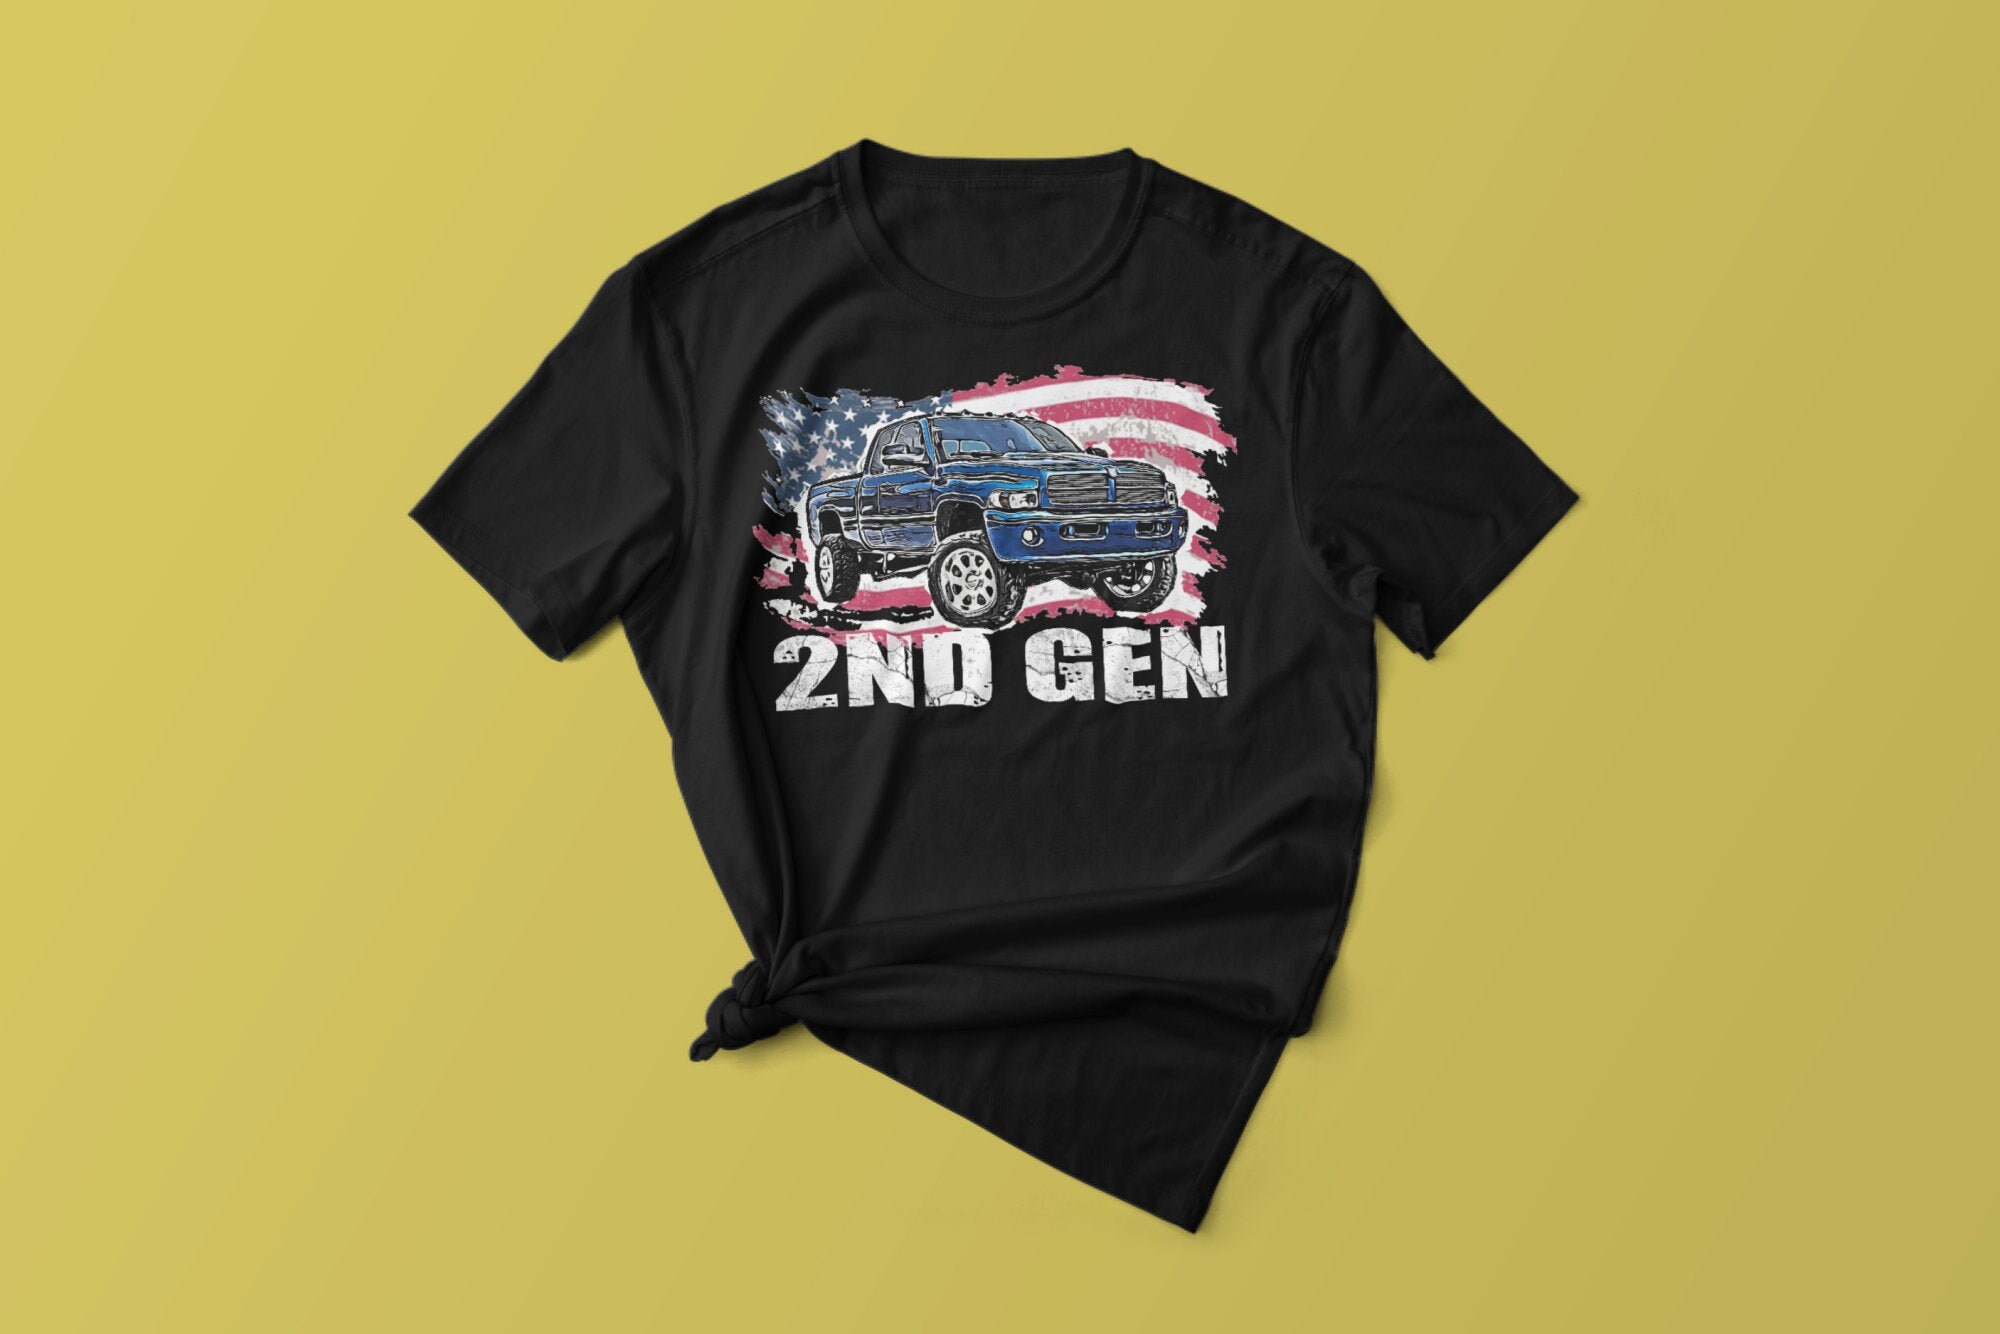 Second Gen Cummins Dodge Ram Truck 2nd Generation Truck Classic American Gen Pickup Short-Sleeve Unisex T-Shirt